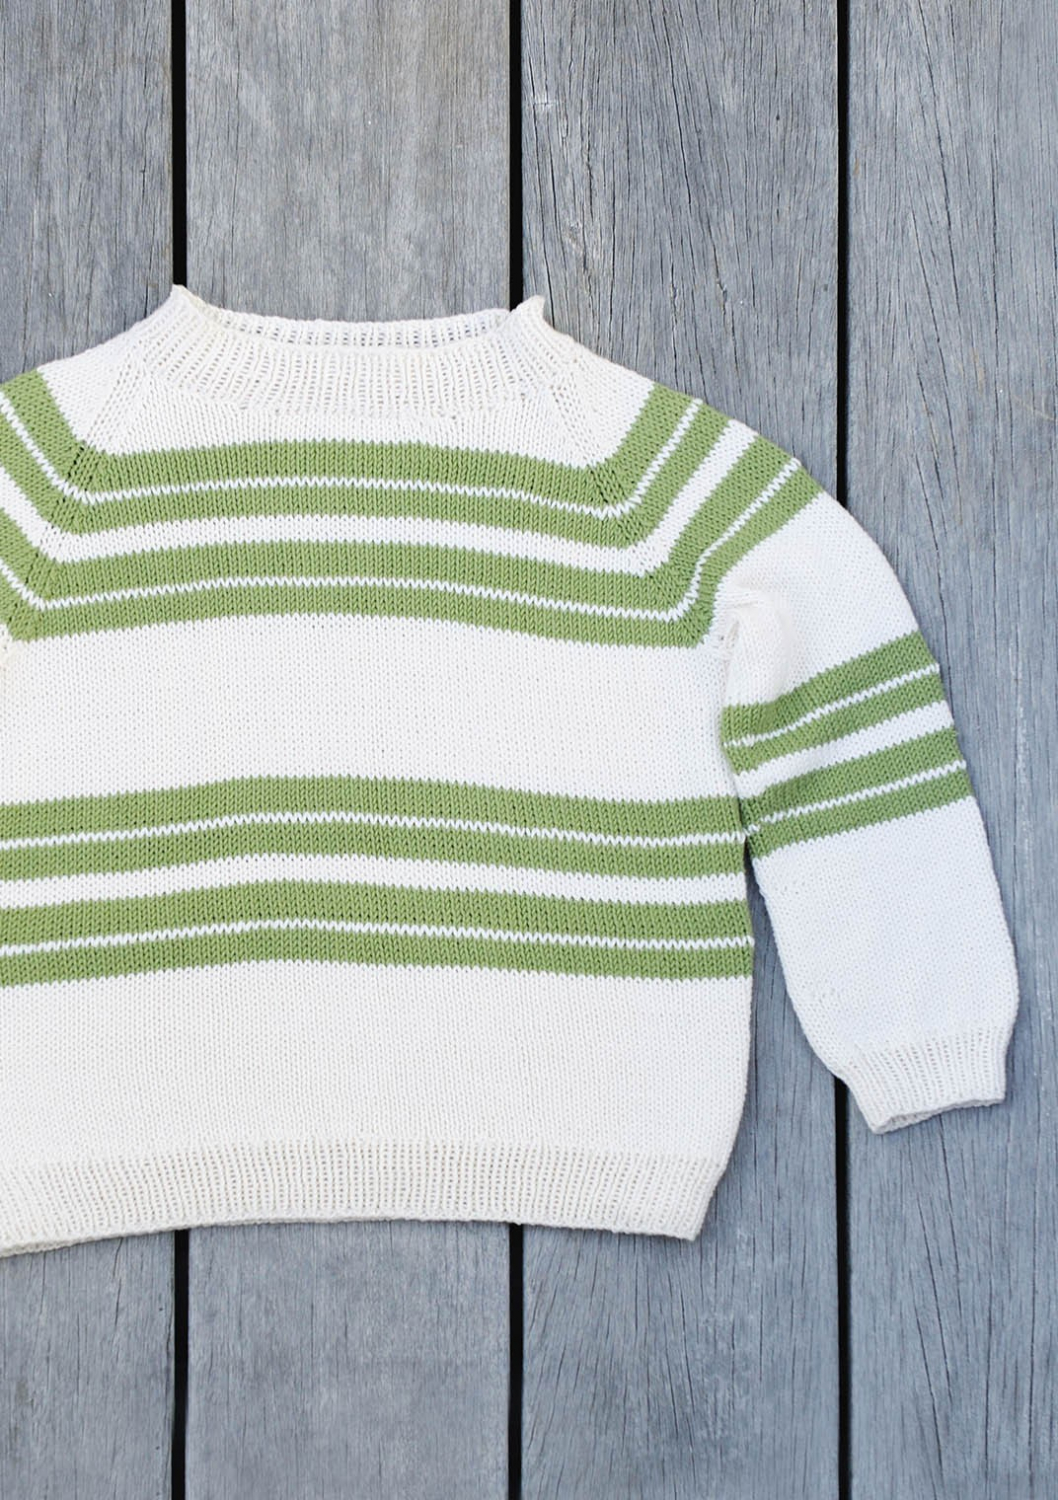 Drenge sweater med striber - PDF opskrift Børn - gratis strikkeopskrifter - Tante Hanne